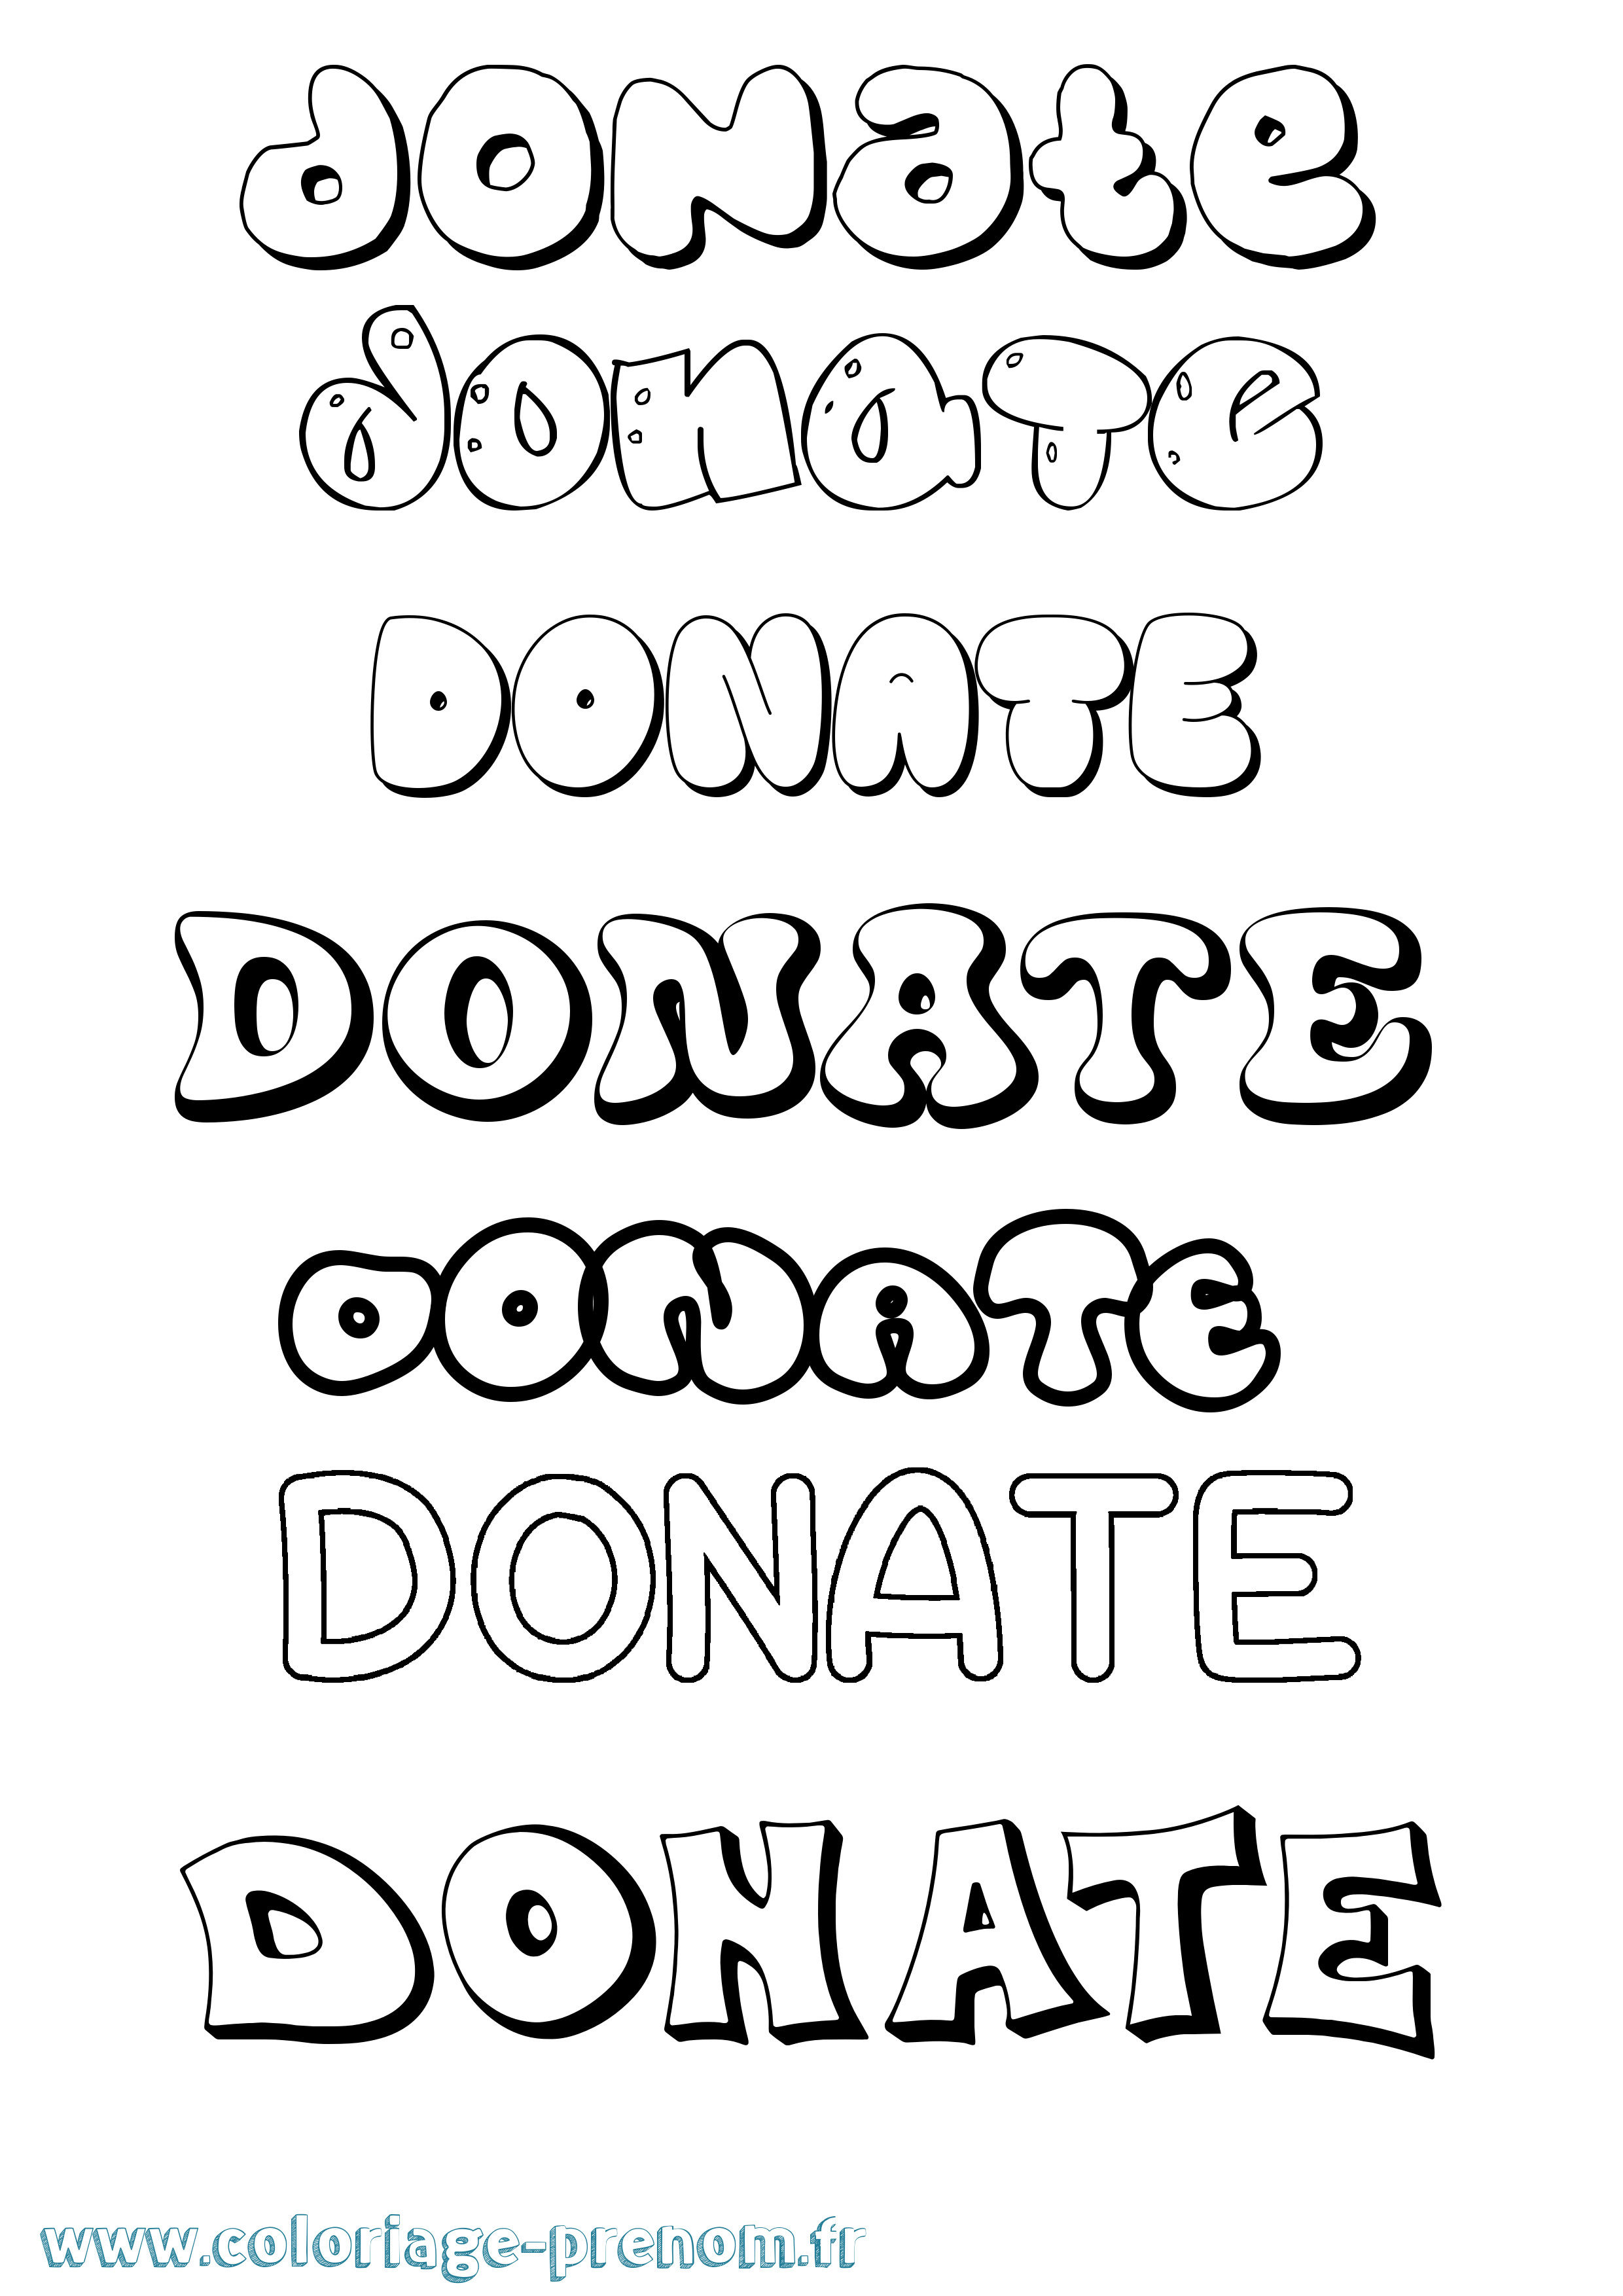 Coloriage prénom Donate Bubble